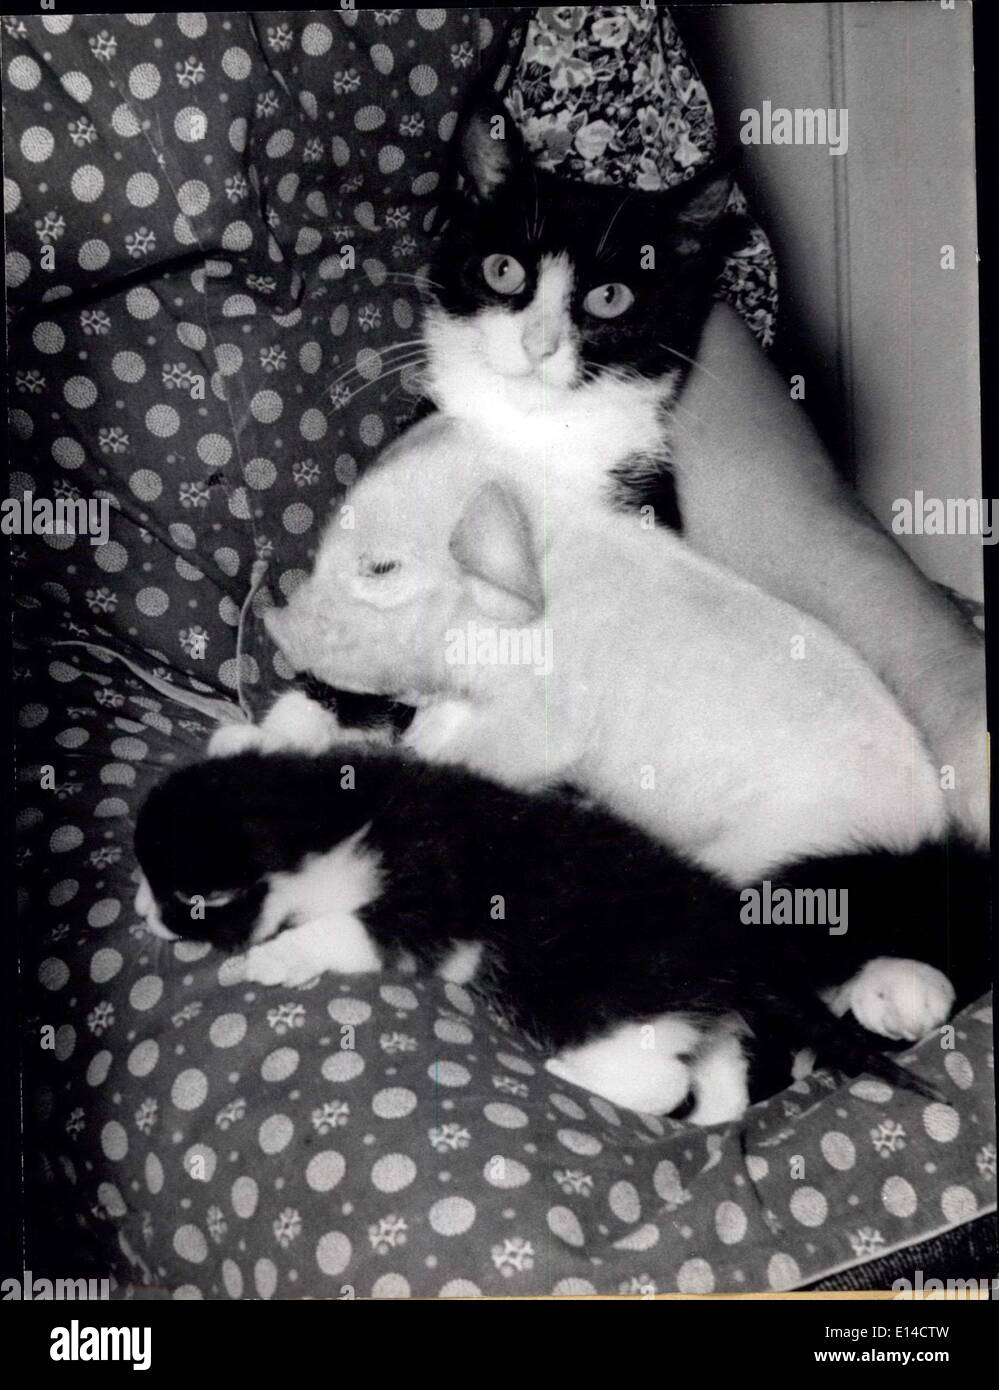 Abril 17, 2012 - Cat representan madre por jóvenes pic: unos pocos días de antigüedad pic fue dada a los cat ''Minka'' porque la cerda había muchas fotos. Minka representan la madre con todo el amor de gatos y no, como sería su hijo owne. Foto de stock